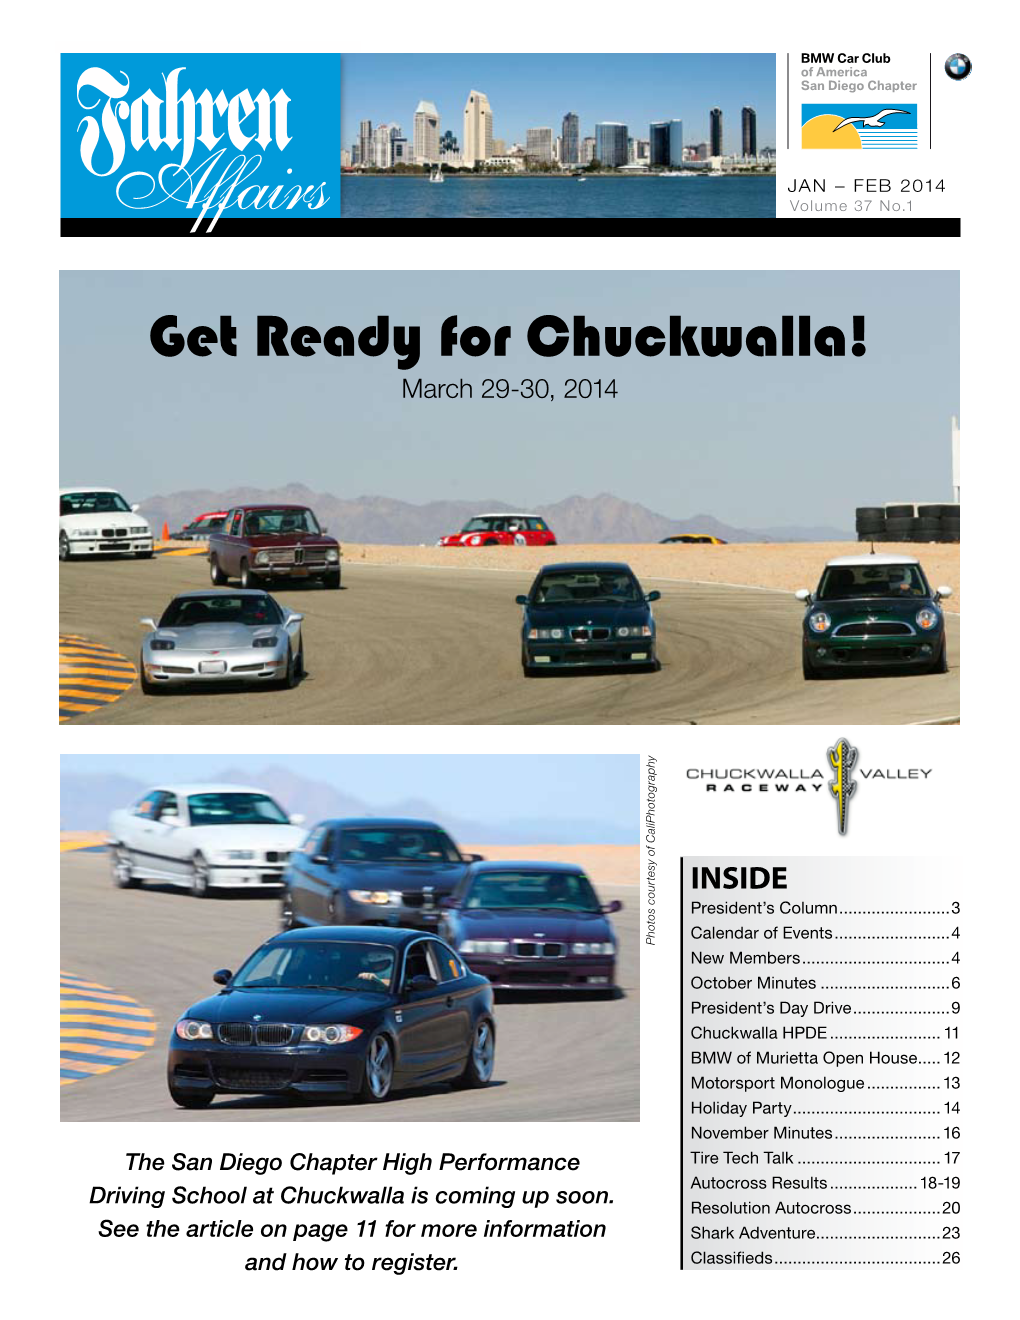 Get Ready for Chuckwalla! March 29-30, 2014